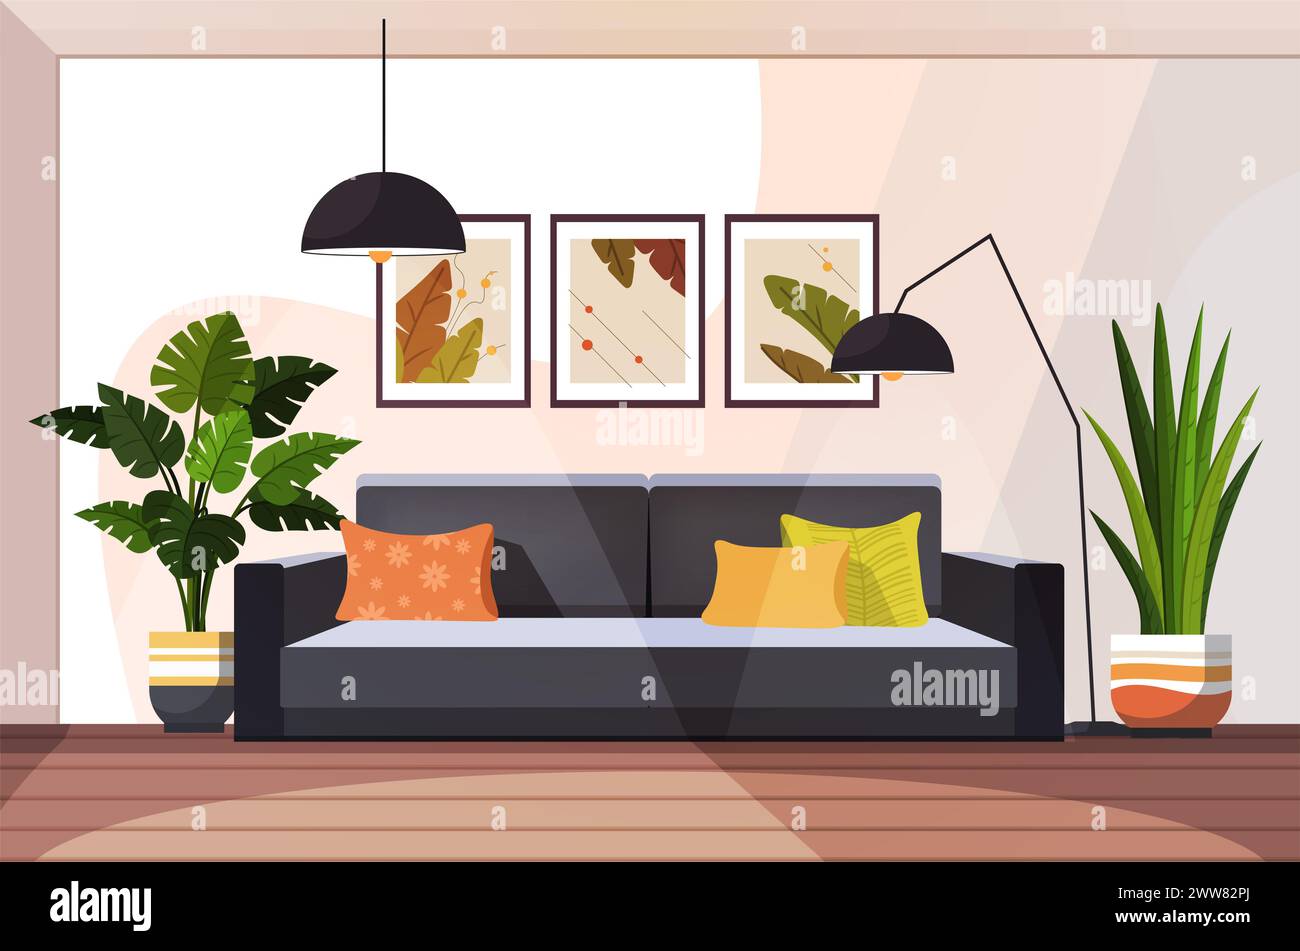 Modernes Wohnzimmer mit Möbeln und Einrichtung. Trendiges, zeitgenössisches Innendesign mit Sofa, Zimmerpflanzen, Bildern und Stehlampe. Flacher Vektor Stockfoto